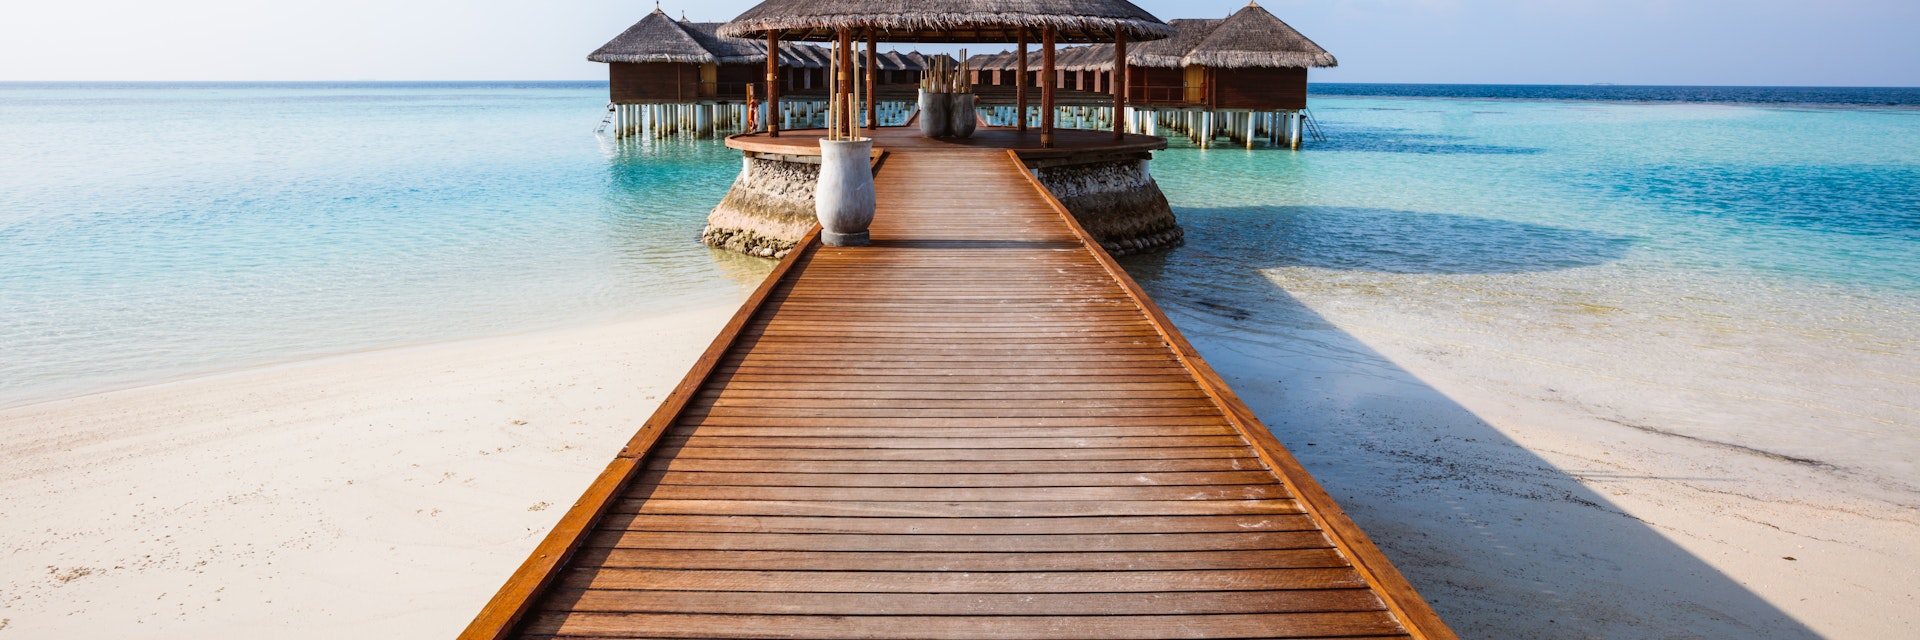 Wooden pier in Maldives.
